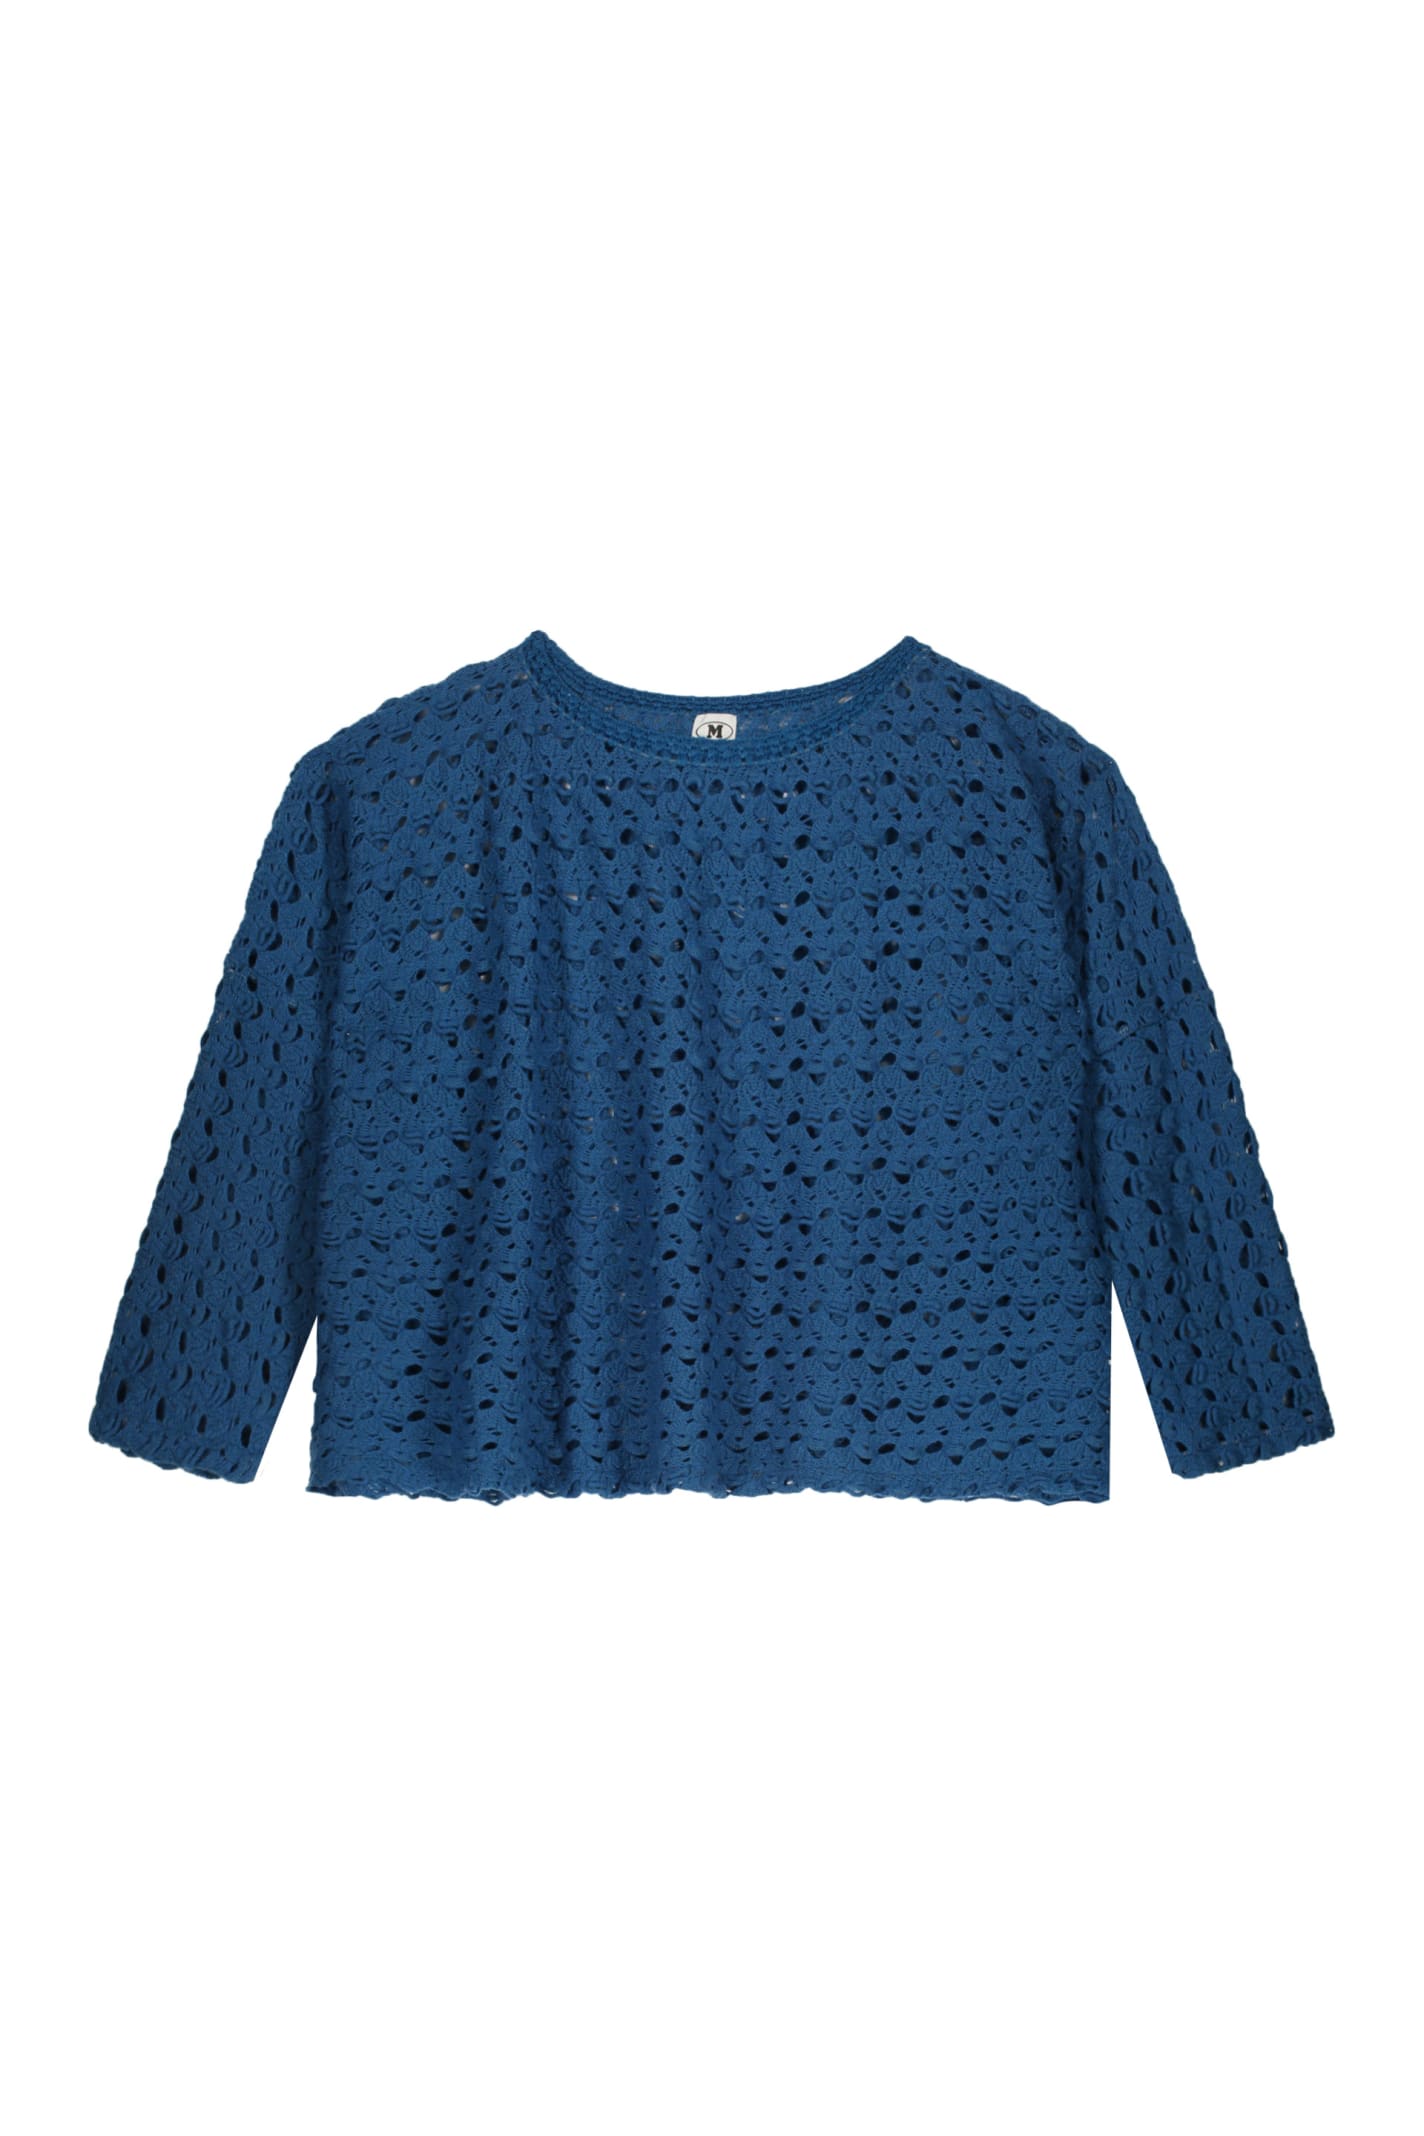 Missoni Wool Blend Sweater In Blue